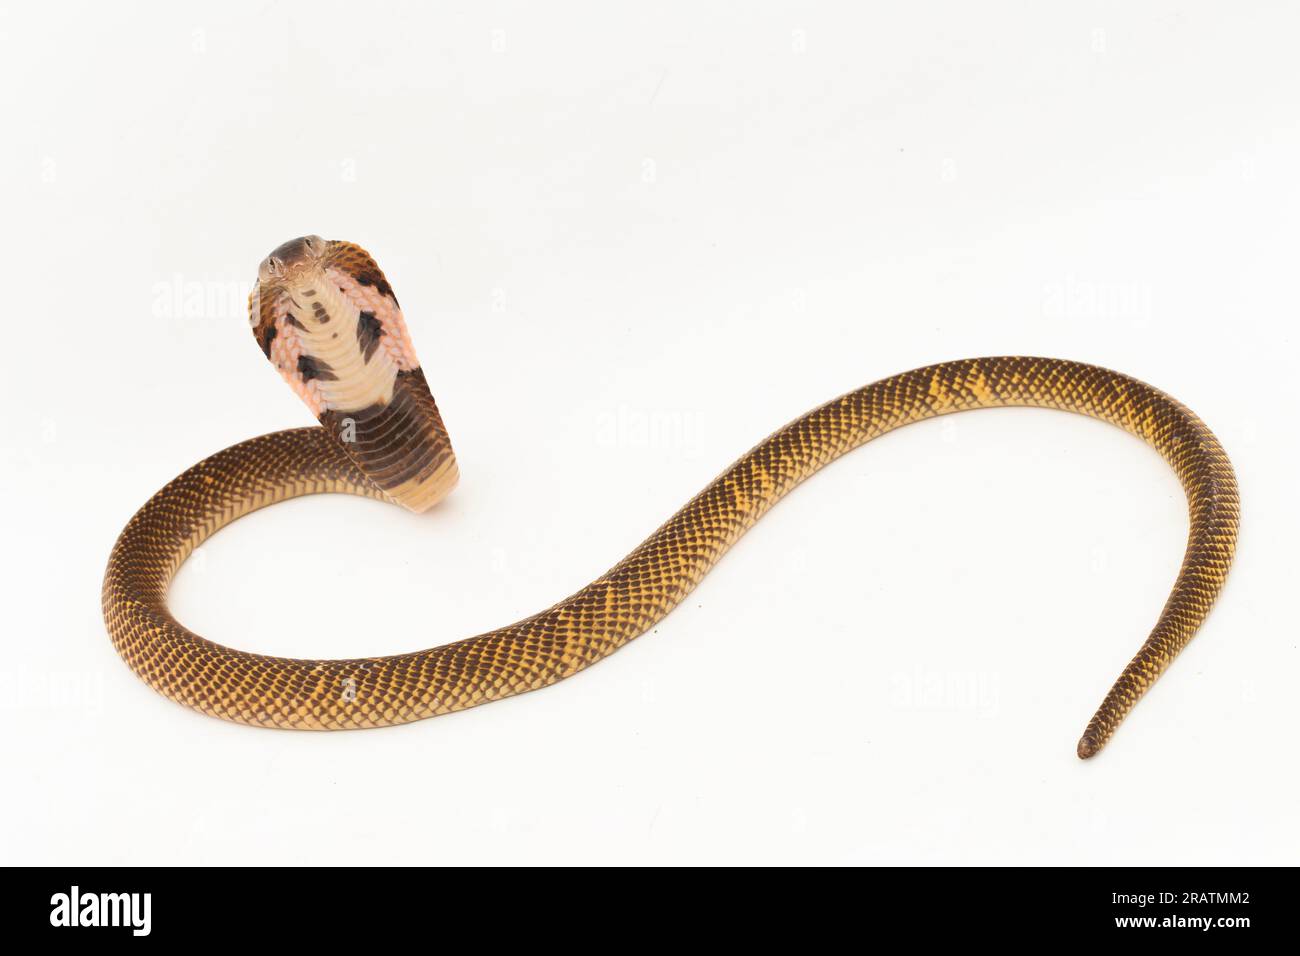 Equatorial Spitting cobra or Golden Spitting Cobra snake (Naja sumatrana) isolated on white background Stock Photo